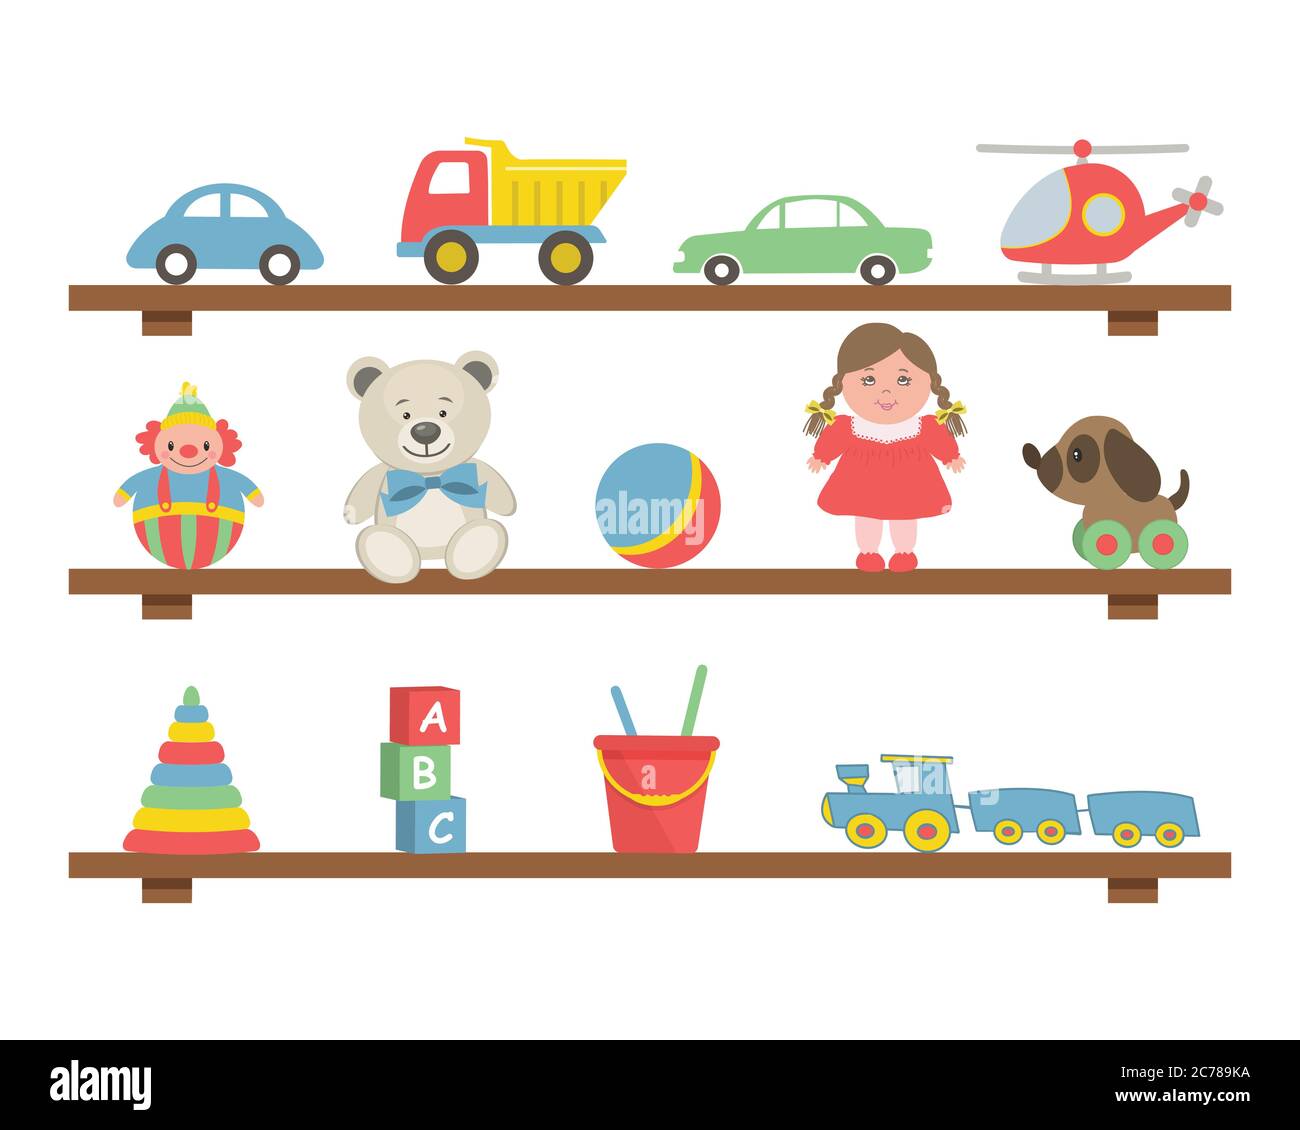 Giocattoli sugli scaffali. Ci sono automobili, un elicottero, orsacchiotti, una bambola, una palla, un treno, un cane, un clown, una piramide, cubi e altri oggetti qui Illustrazione Vettoriale